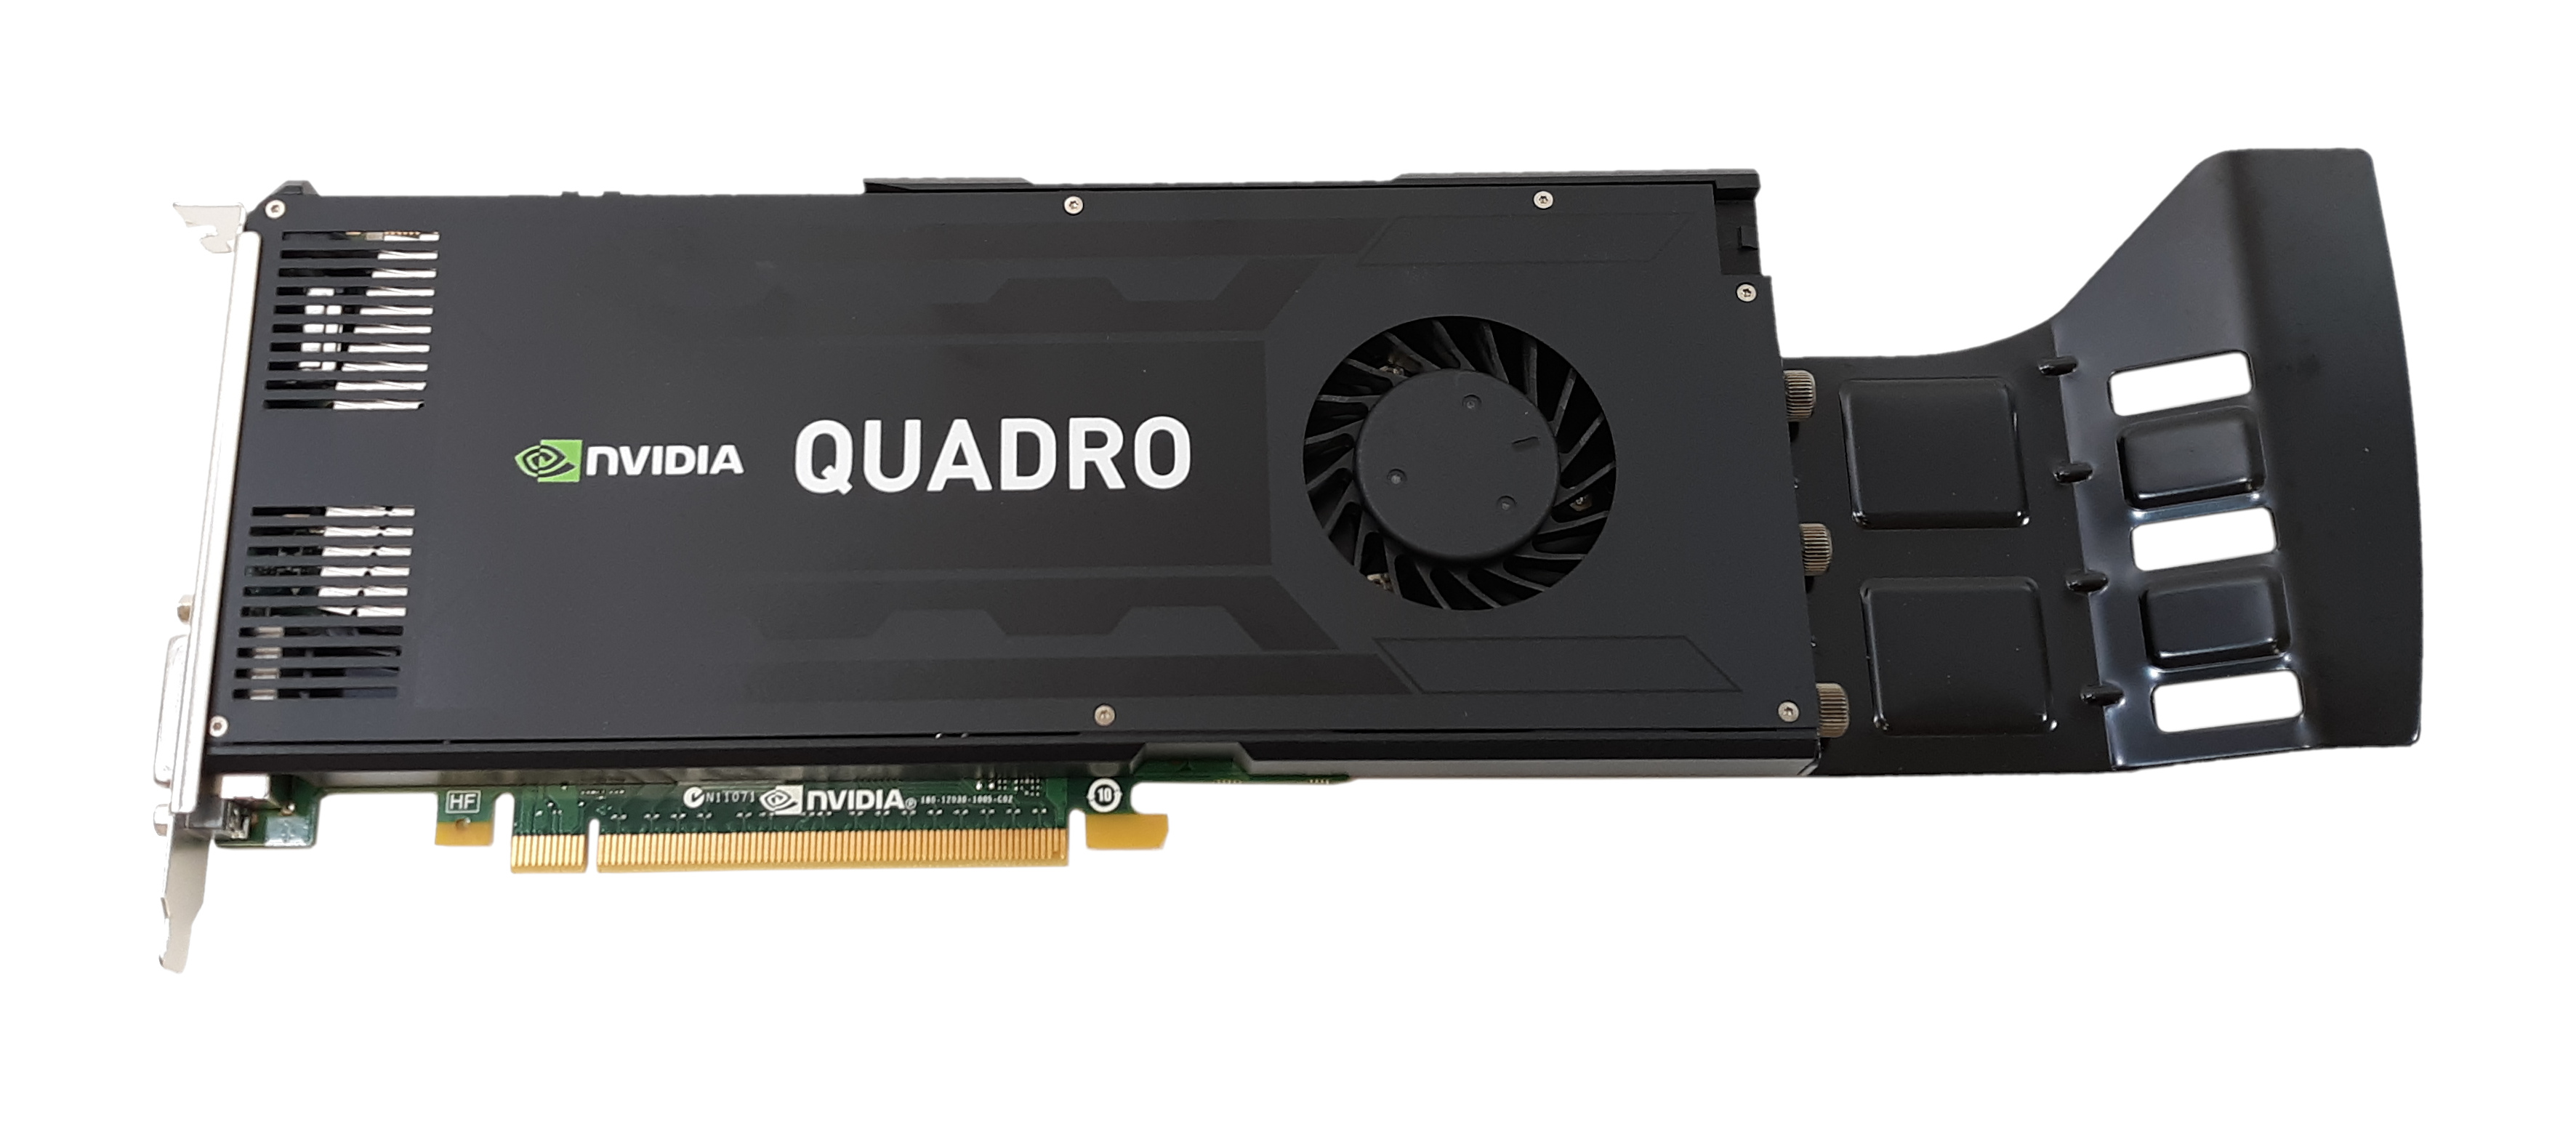 HP nVIDIA Quadro K4000 GPU 3GB PCIE x16 2xDP/DVI 700104-001 713381-001 C2J94AA